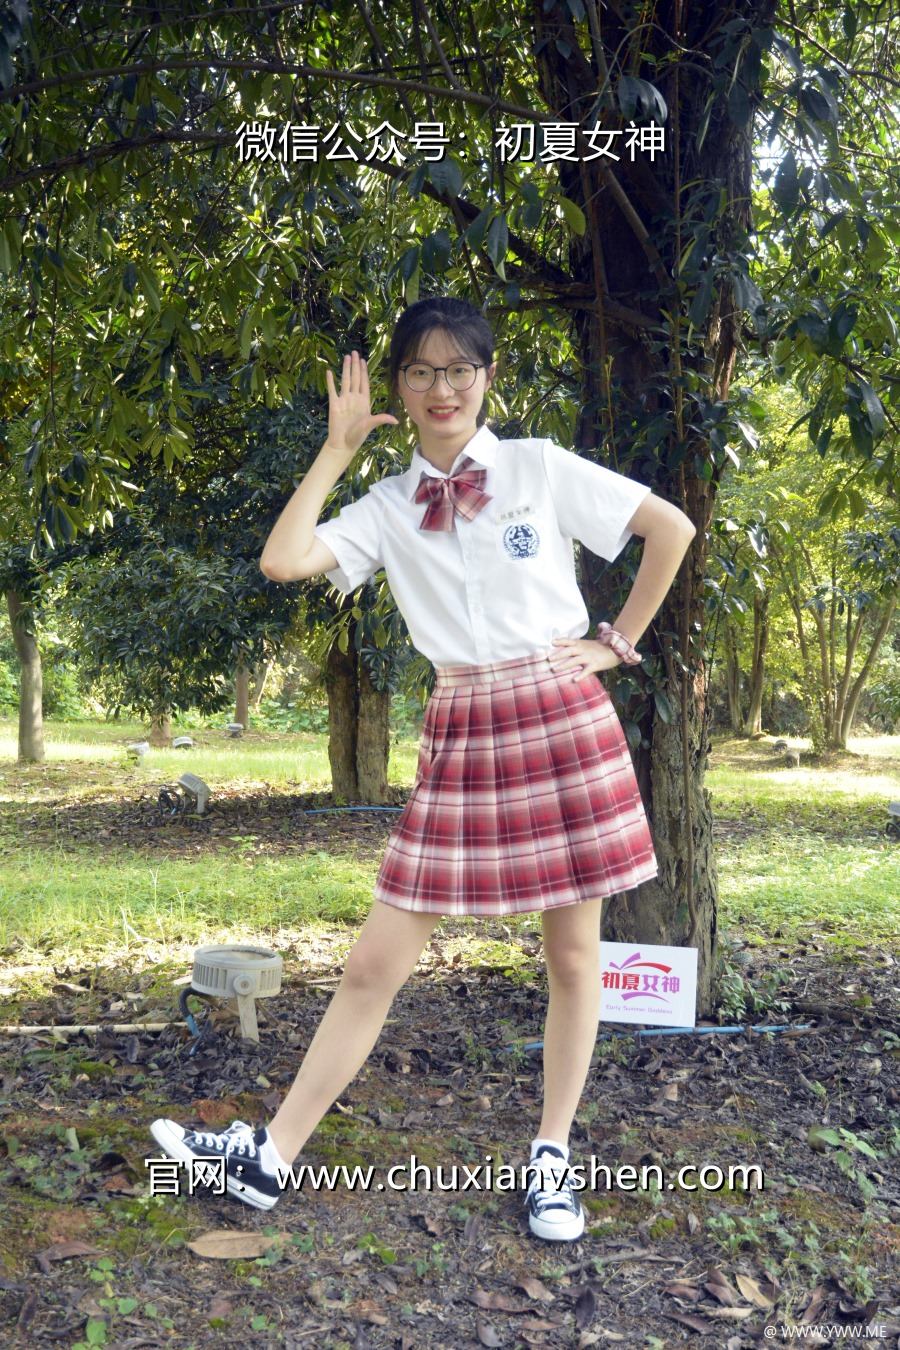 [初夏女神] 091 安妮~【草莓色JK】这款JK套装搭配匡威帆布鞋也挺好看-HDMISS